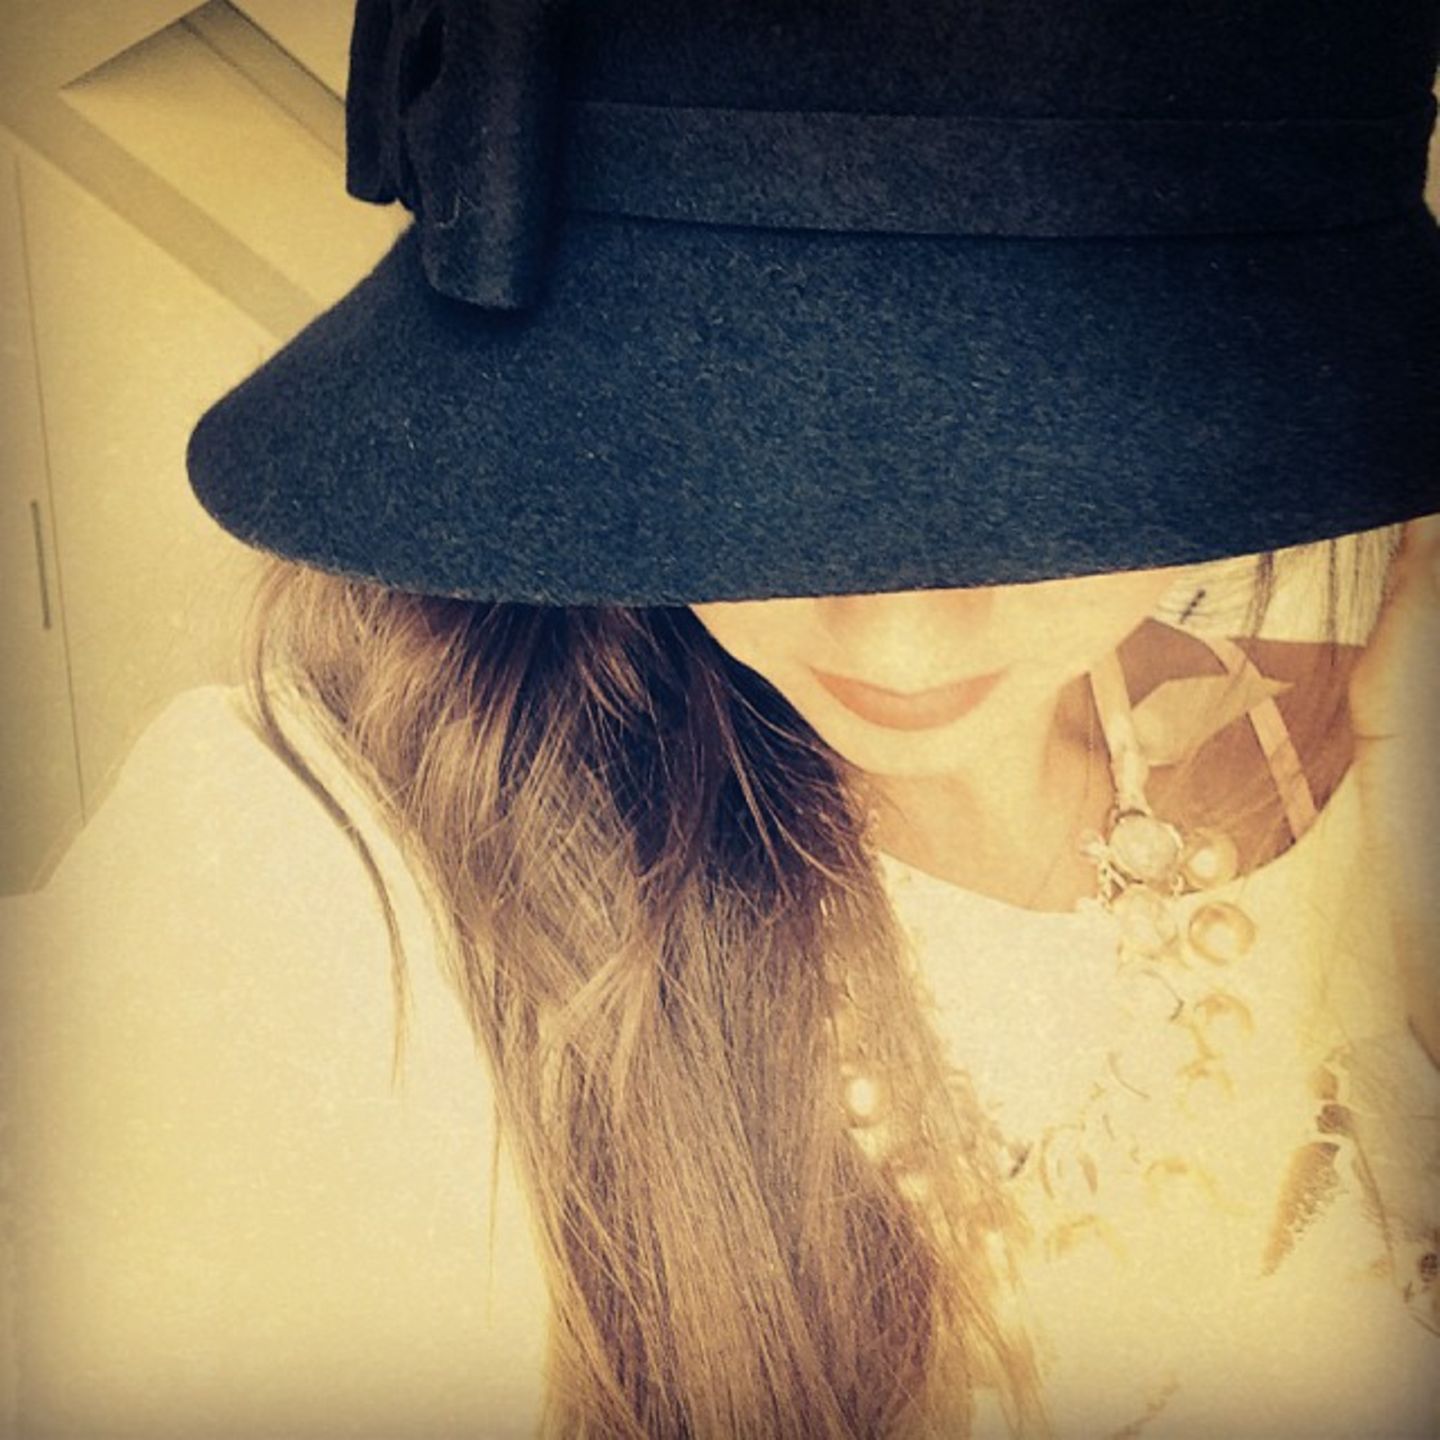 Sarah Lombardi  Wer versteckt sich denn hinter diesem großen Hut? Sarah Lombardis erste Instagram-Anfänge vom 23. August 2014 lassen sich als schüchtern beschreiben. Heute gibt uns die Sängerin via Instagram viele spannende und intime Einblicke in ihr Leben. 